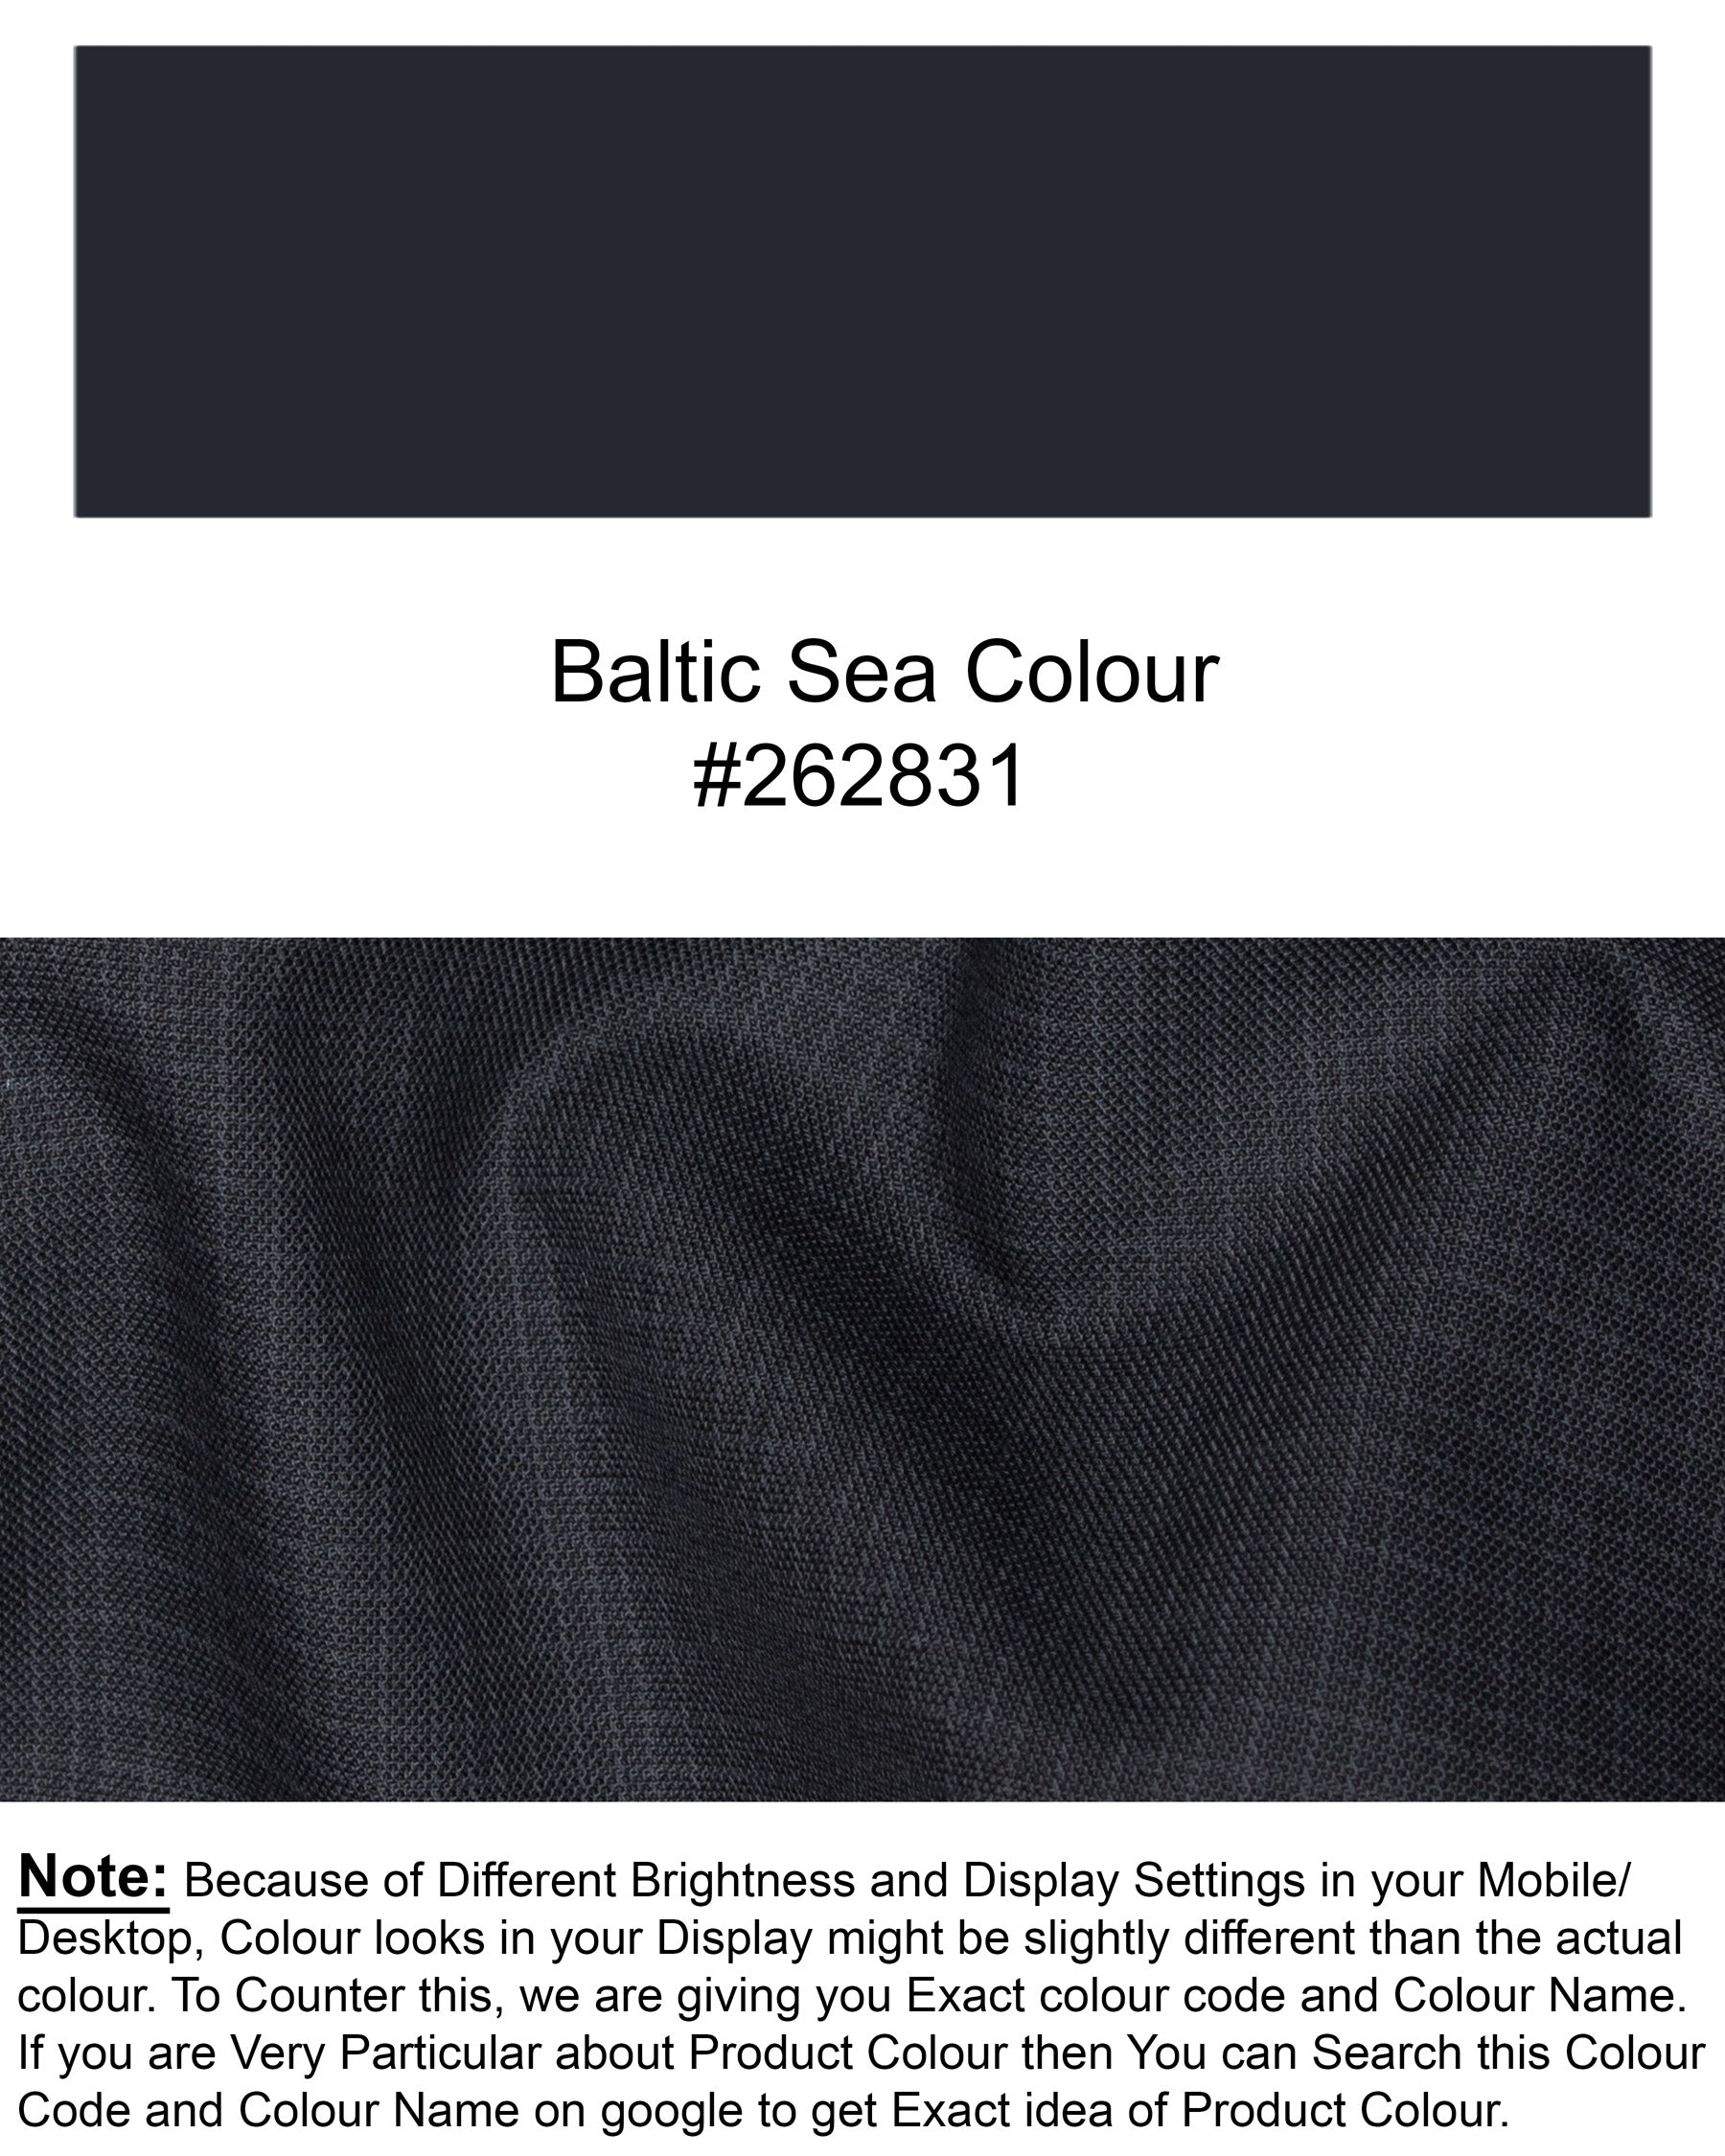 Baltic Sea Plaid Wool Rich Suit ST1347-SB-36, ST1347-SB-38, ST1347-SB-40, ST1347-SB-42, ST1347-SB-44, ST1347-SB-46, ST1347-SB-48, ST1347-SB-50, ST1347-SB-52, ST1347-SB-54, ST1347-SB-56, ST1347-SB-58, ST1347-SB-60